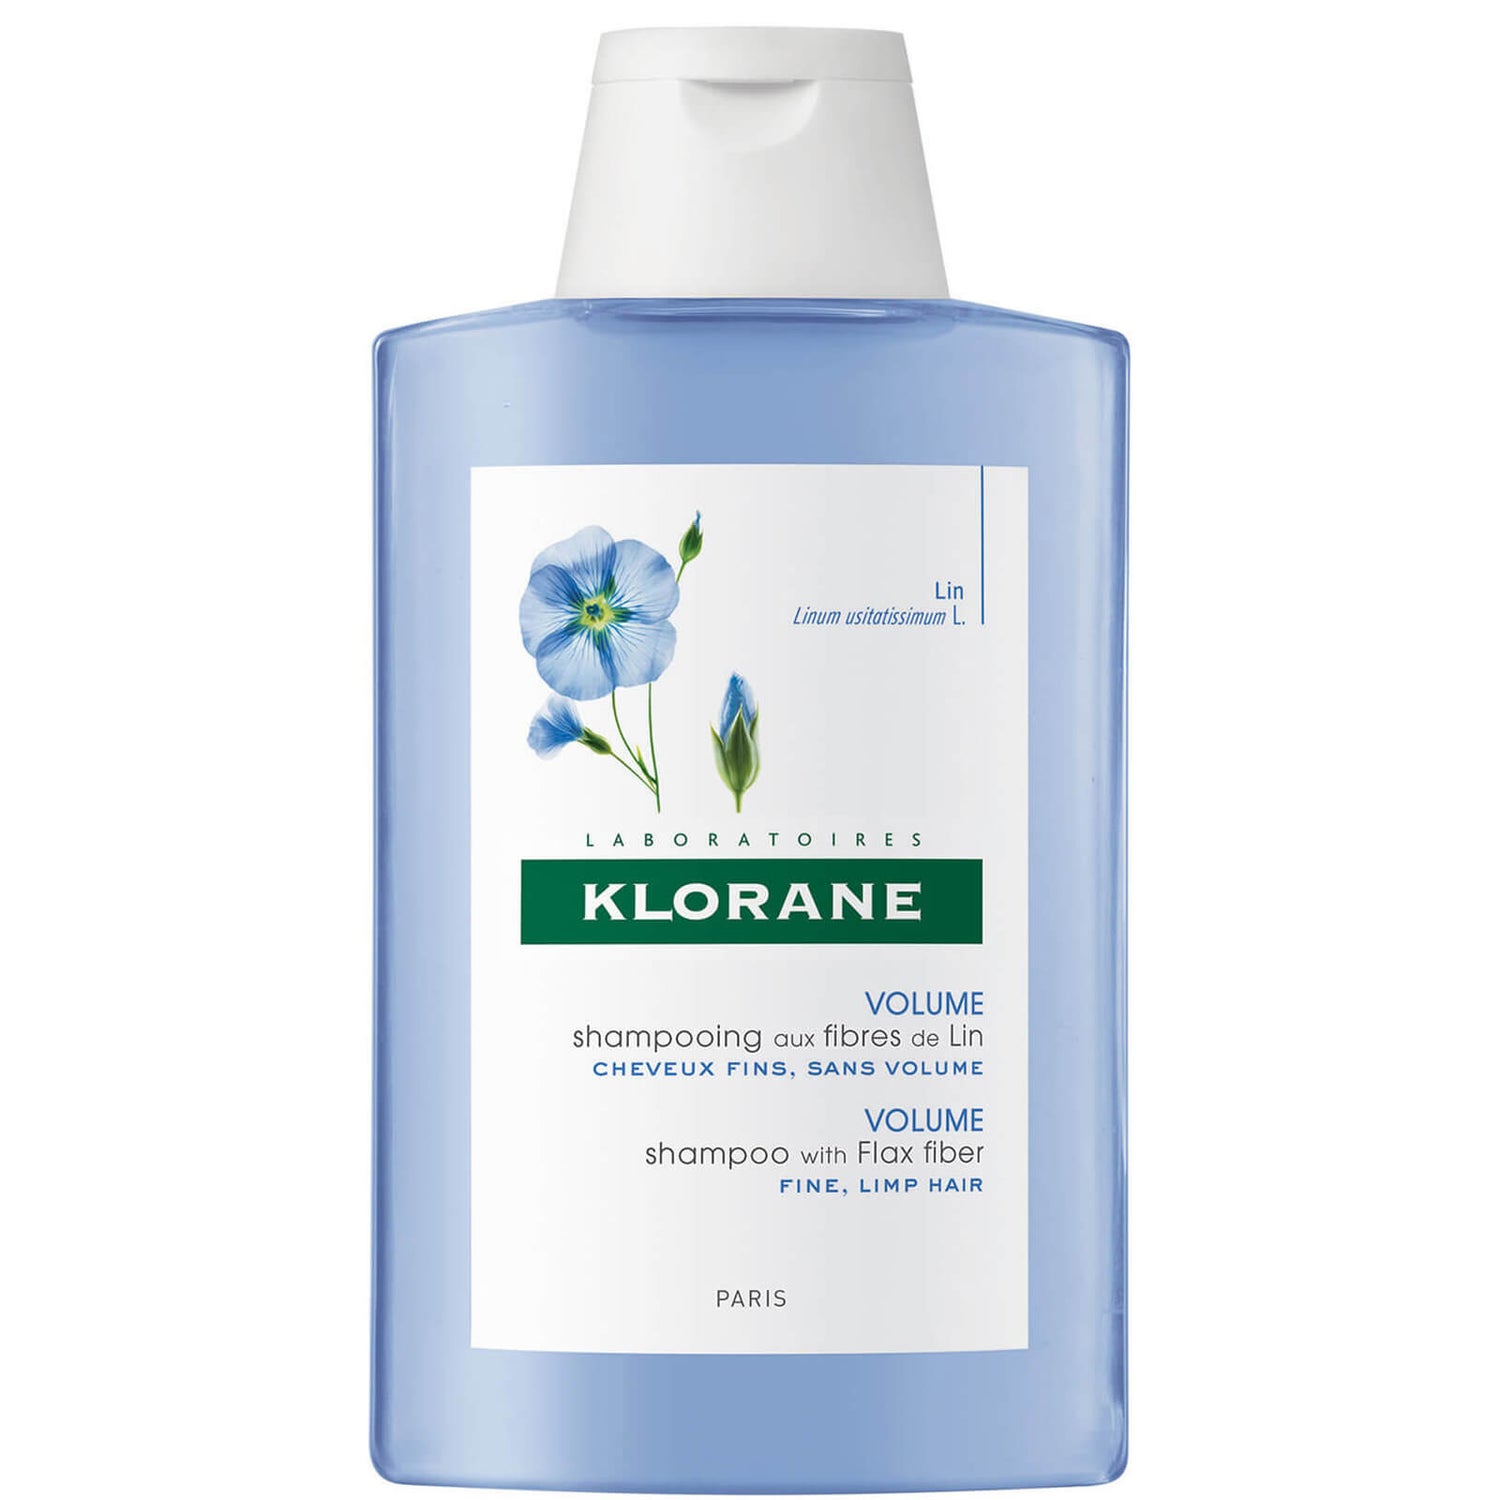 KLORANE Flax Fibres Shampoo 200ml